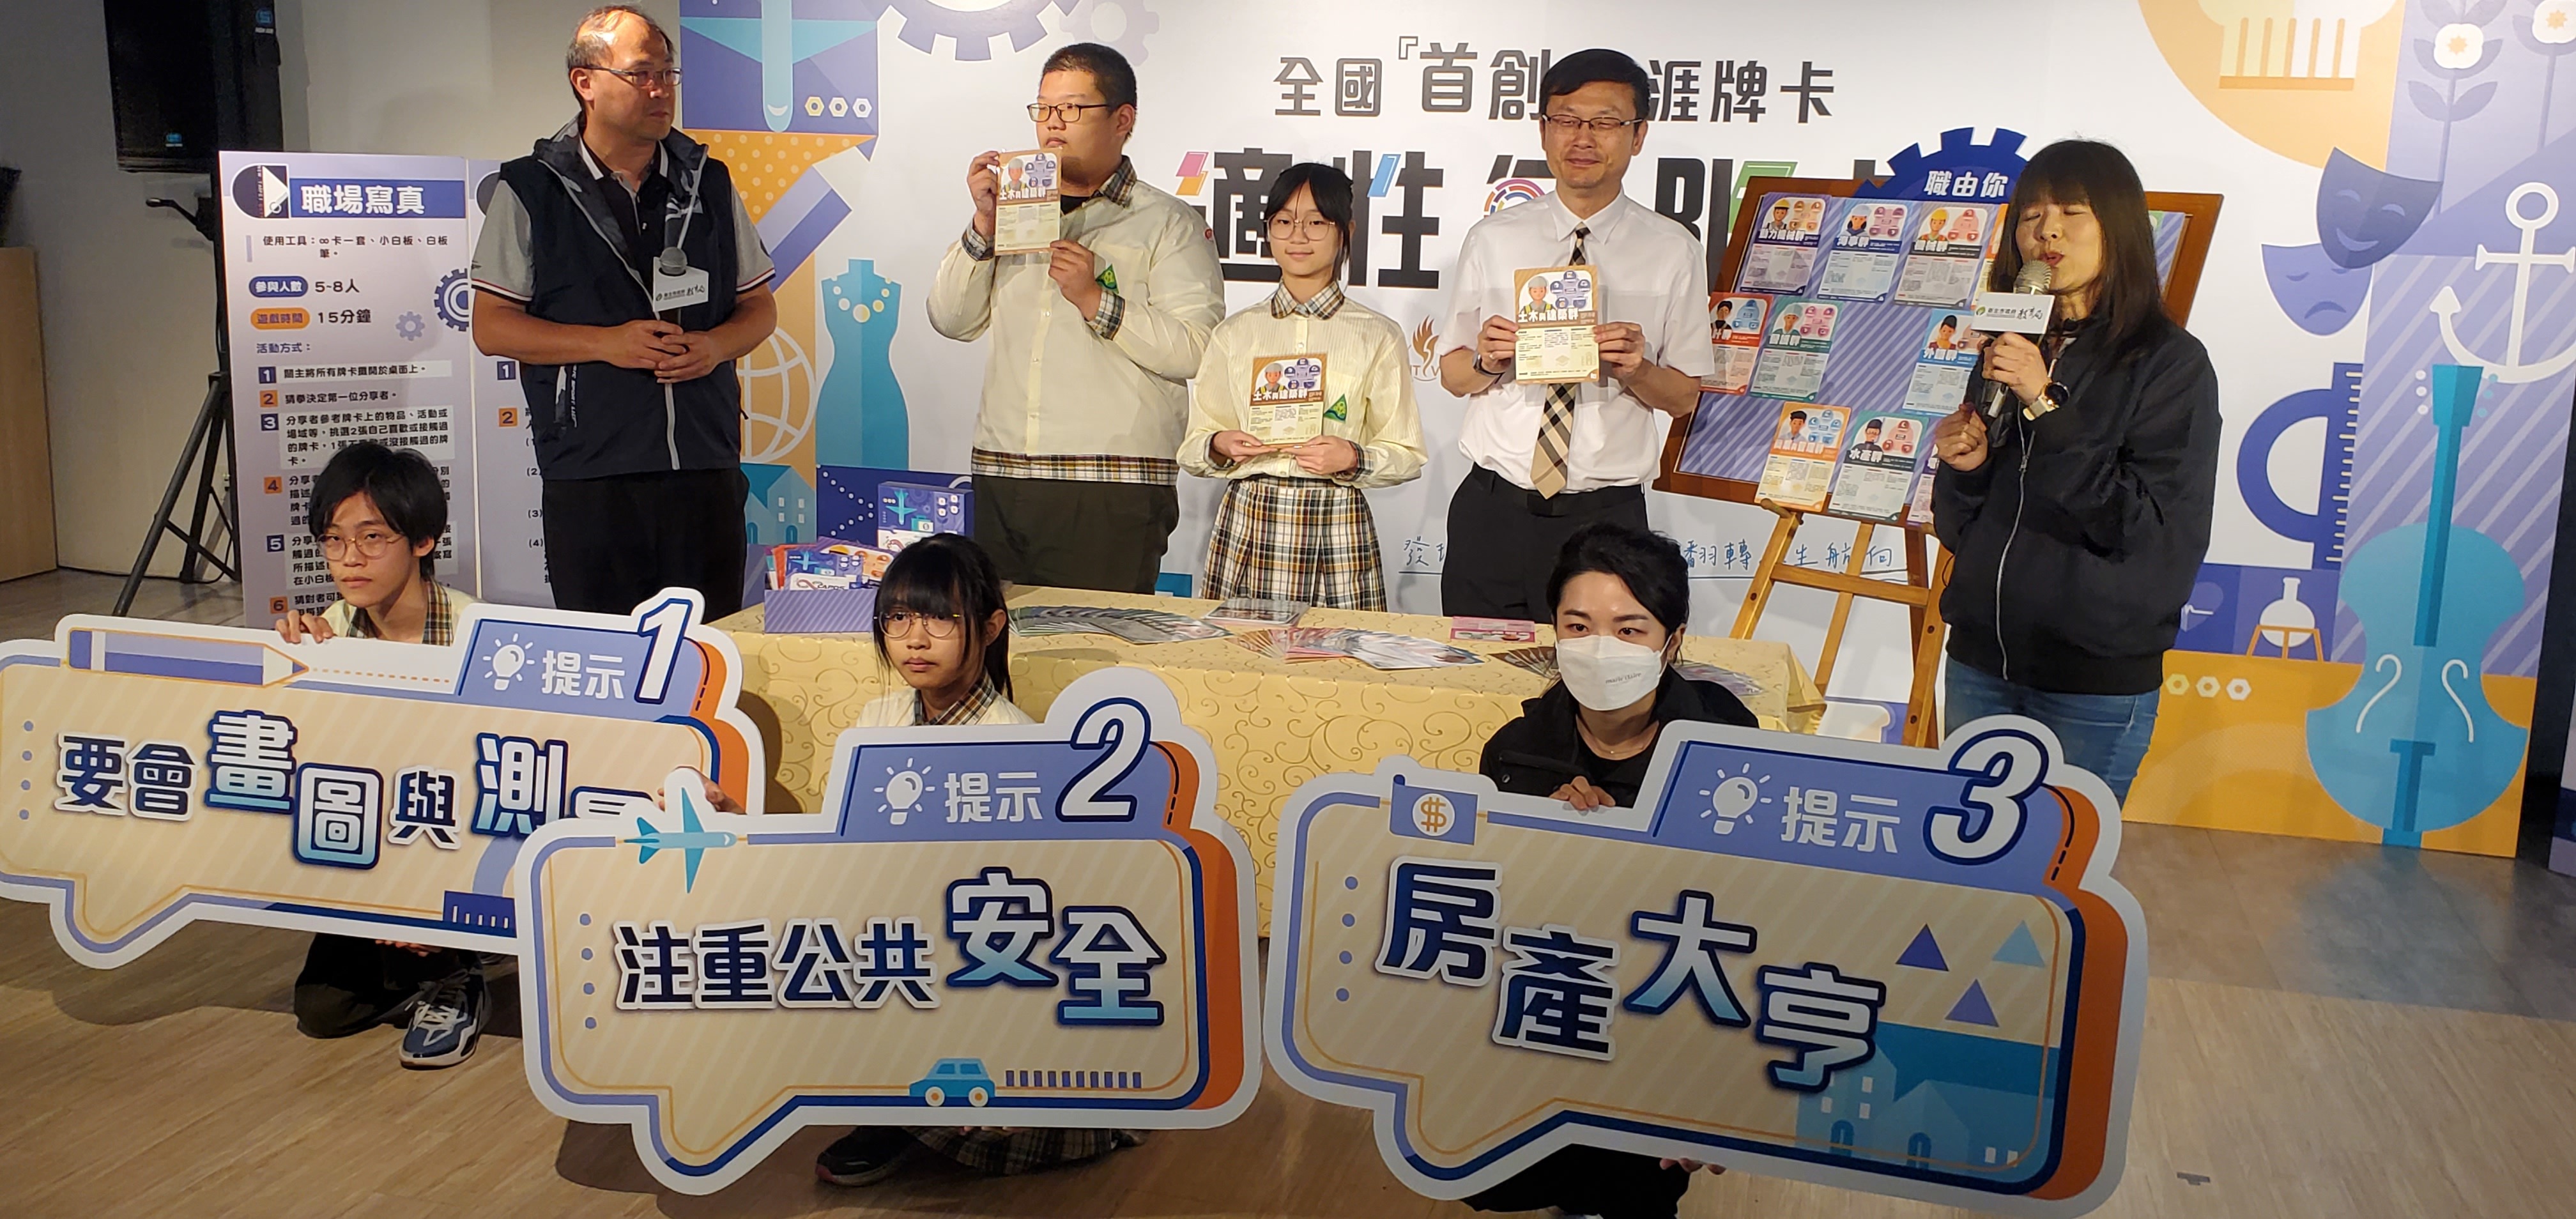 張明文局長(站立者右2)及學生試玩無限卡獨家「職群對對碰」及「職由你」2種玩法